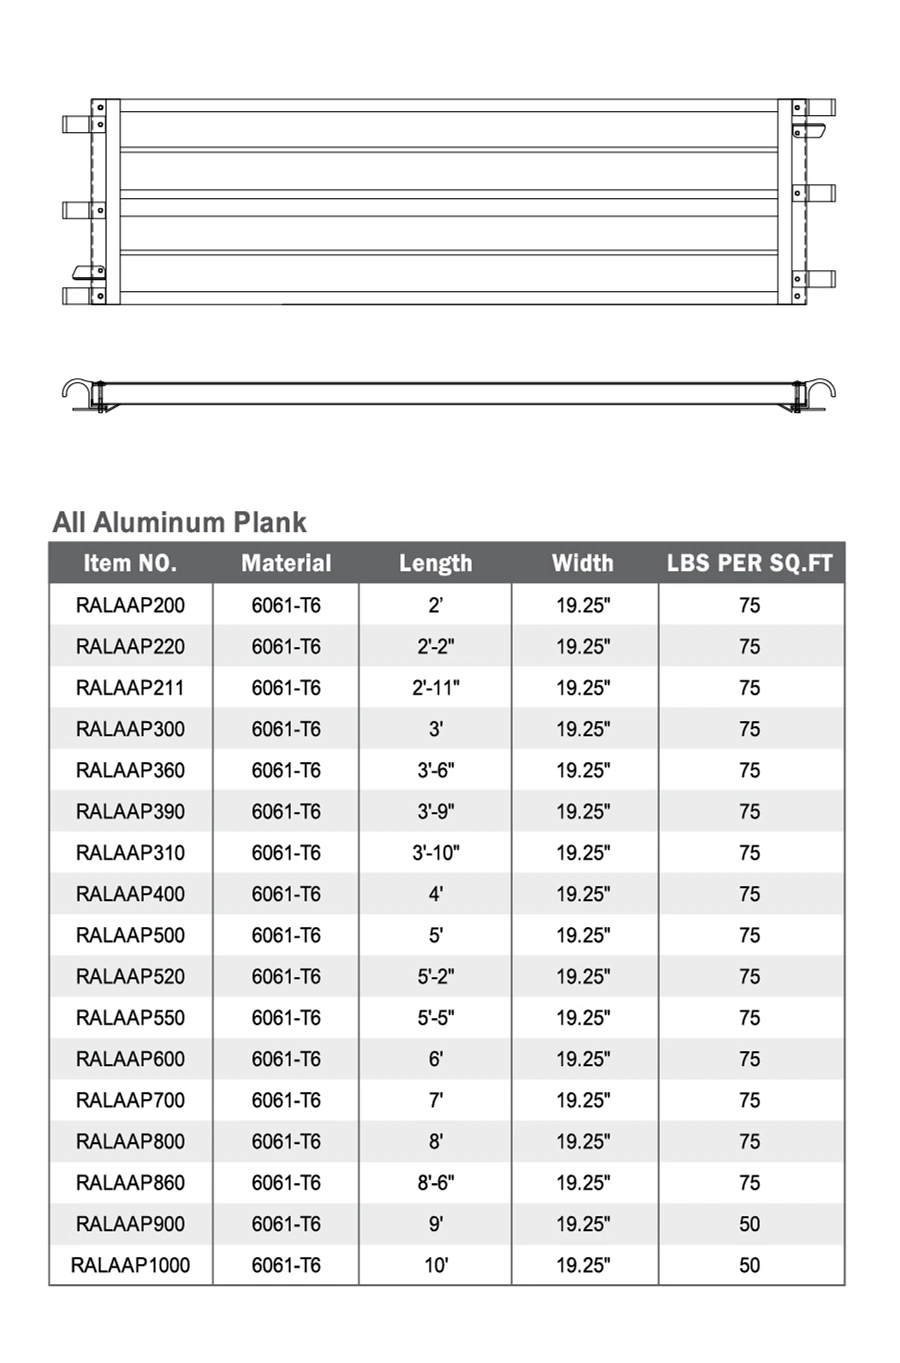 All Aluminum Plank Construction Scaffolding Scaffold Work Catwalk Lift Platform